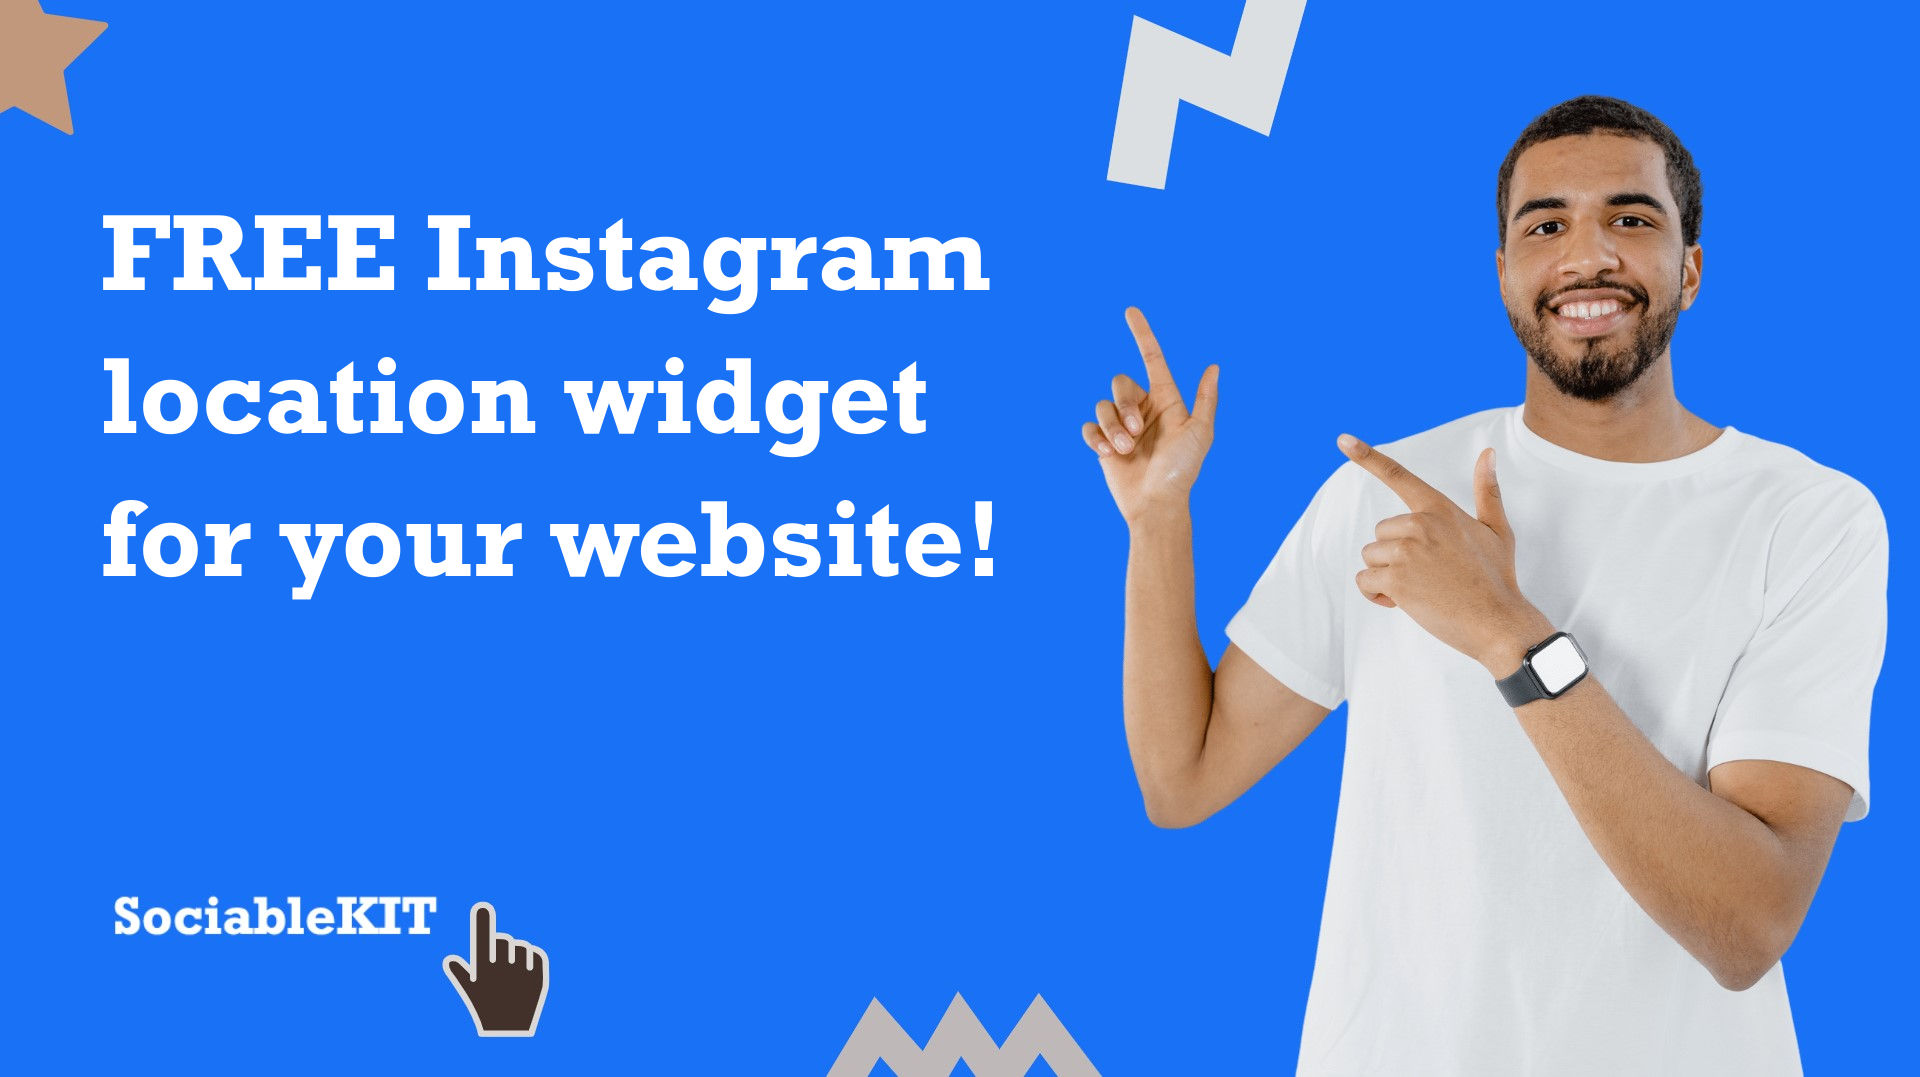 Free Instagram location widget for your website